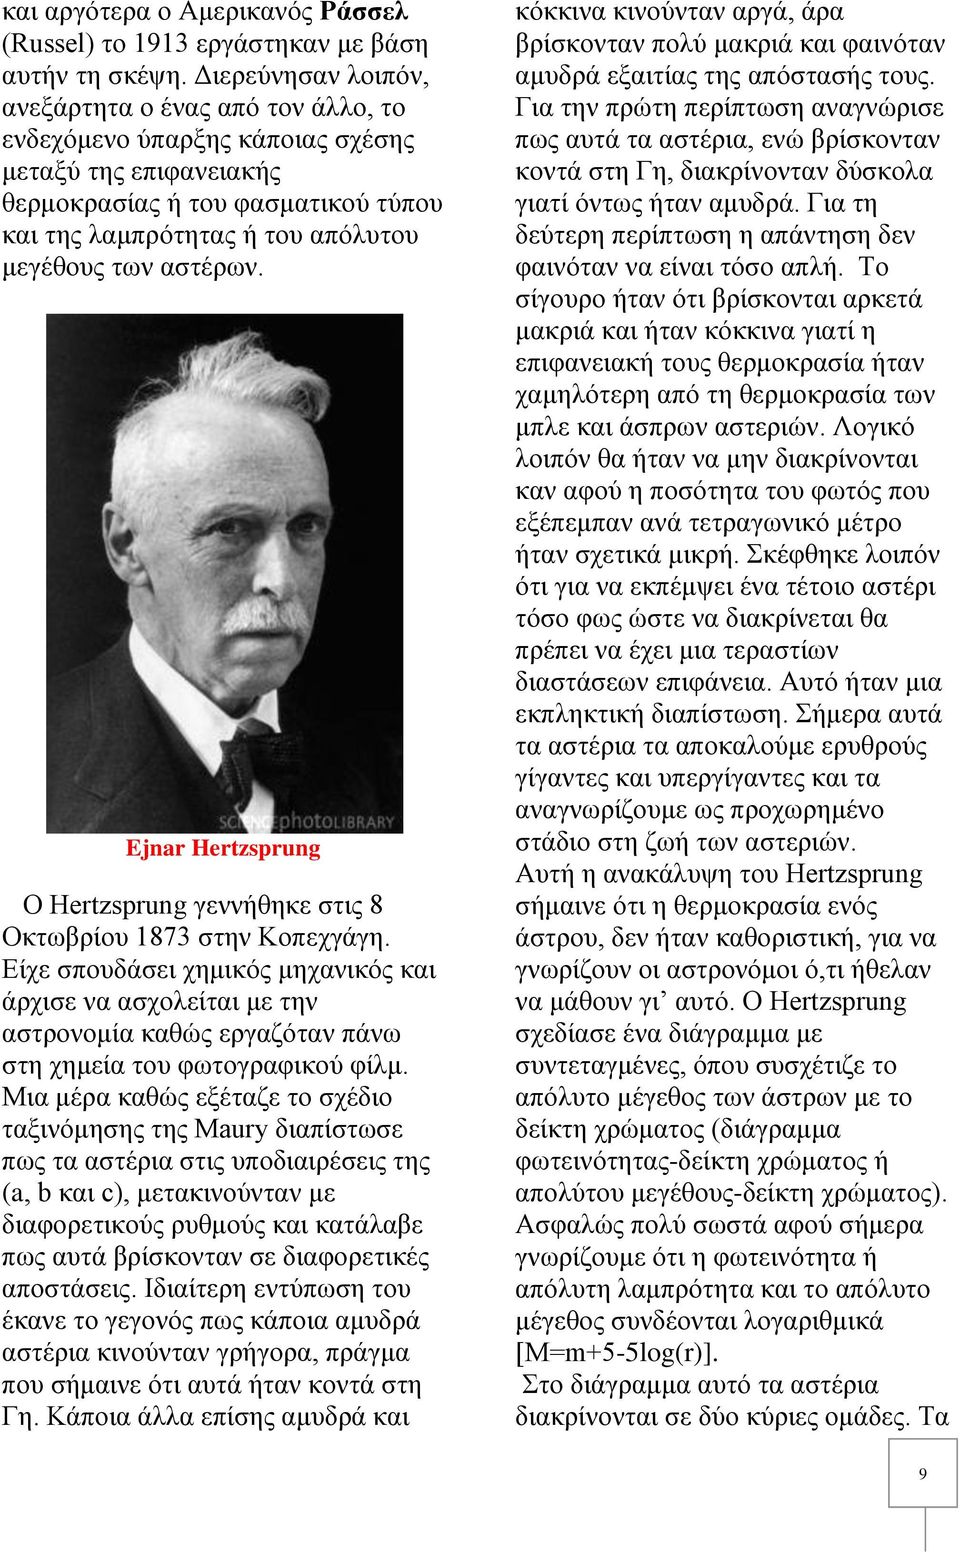 αστέρων. Ejnar Hertzsprung O Hertzsprung γεννήθηκε στις 8 Οκτωβρίου 1873 στην Κοπεχγάγη.